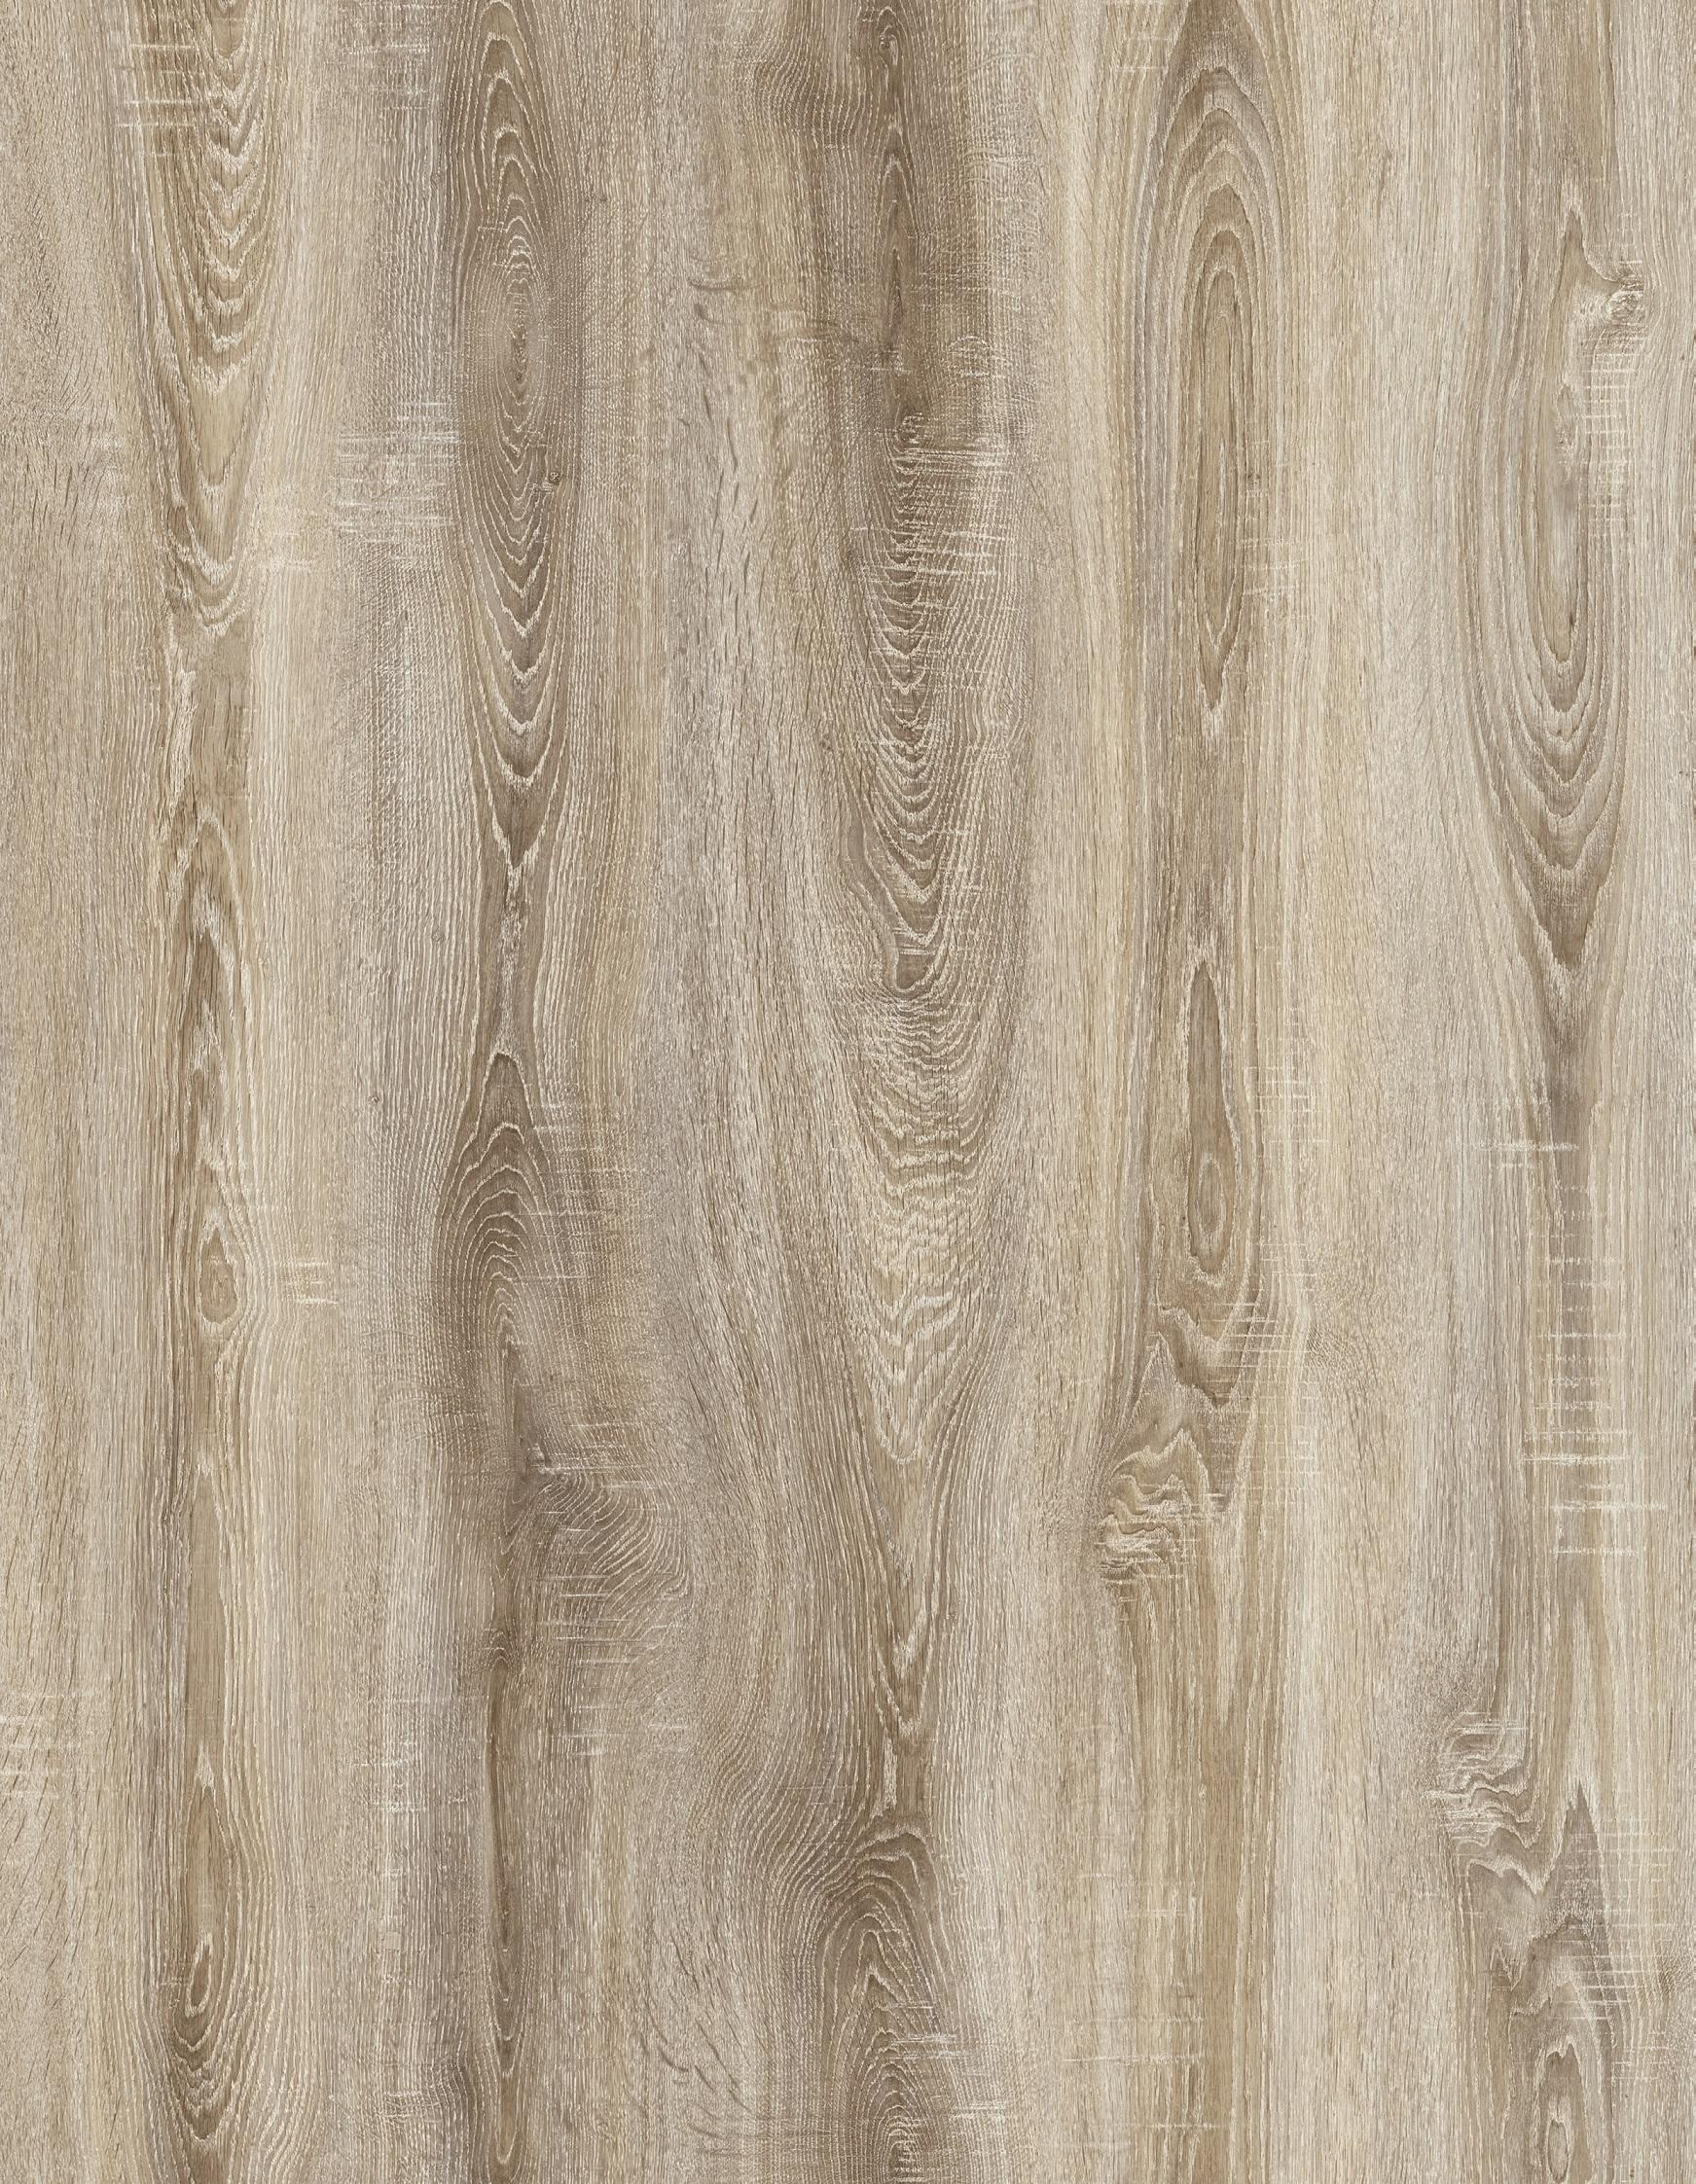 AGT Natura Flooring Series Silyon Oak 8 mm Laminate Flooring AC 3 Class 31 / Eng